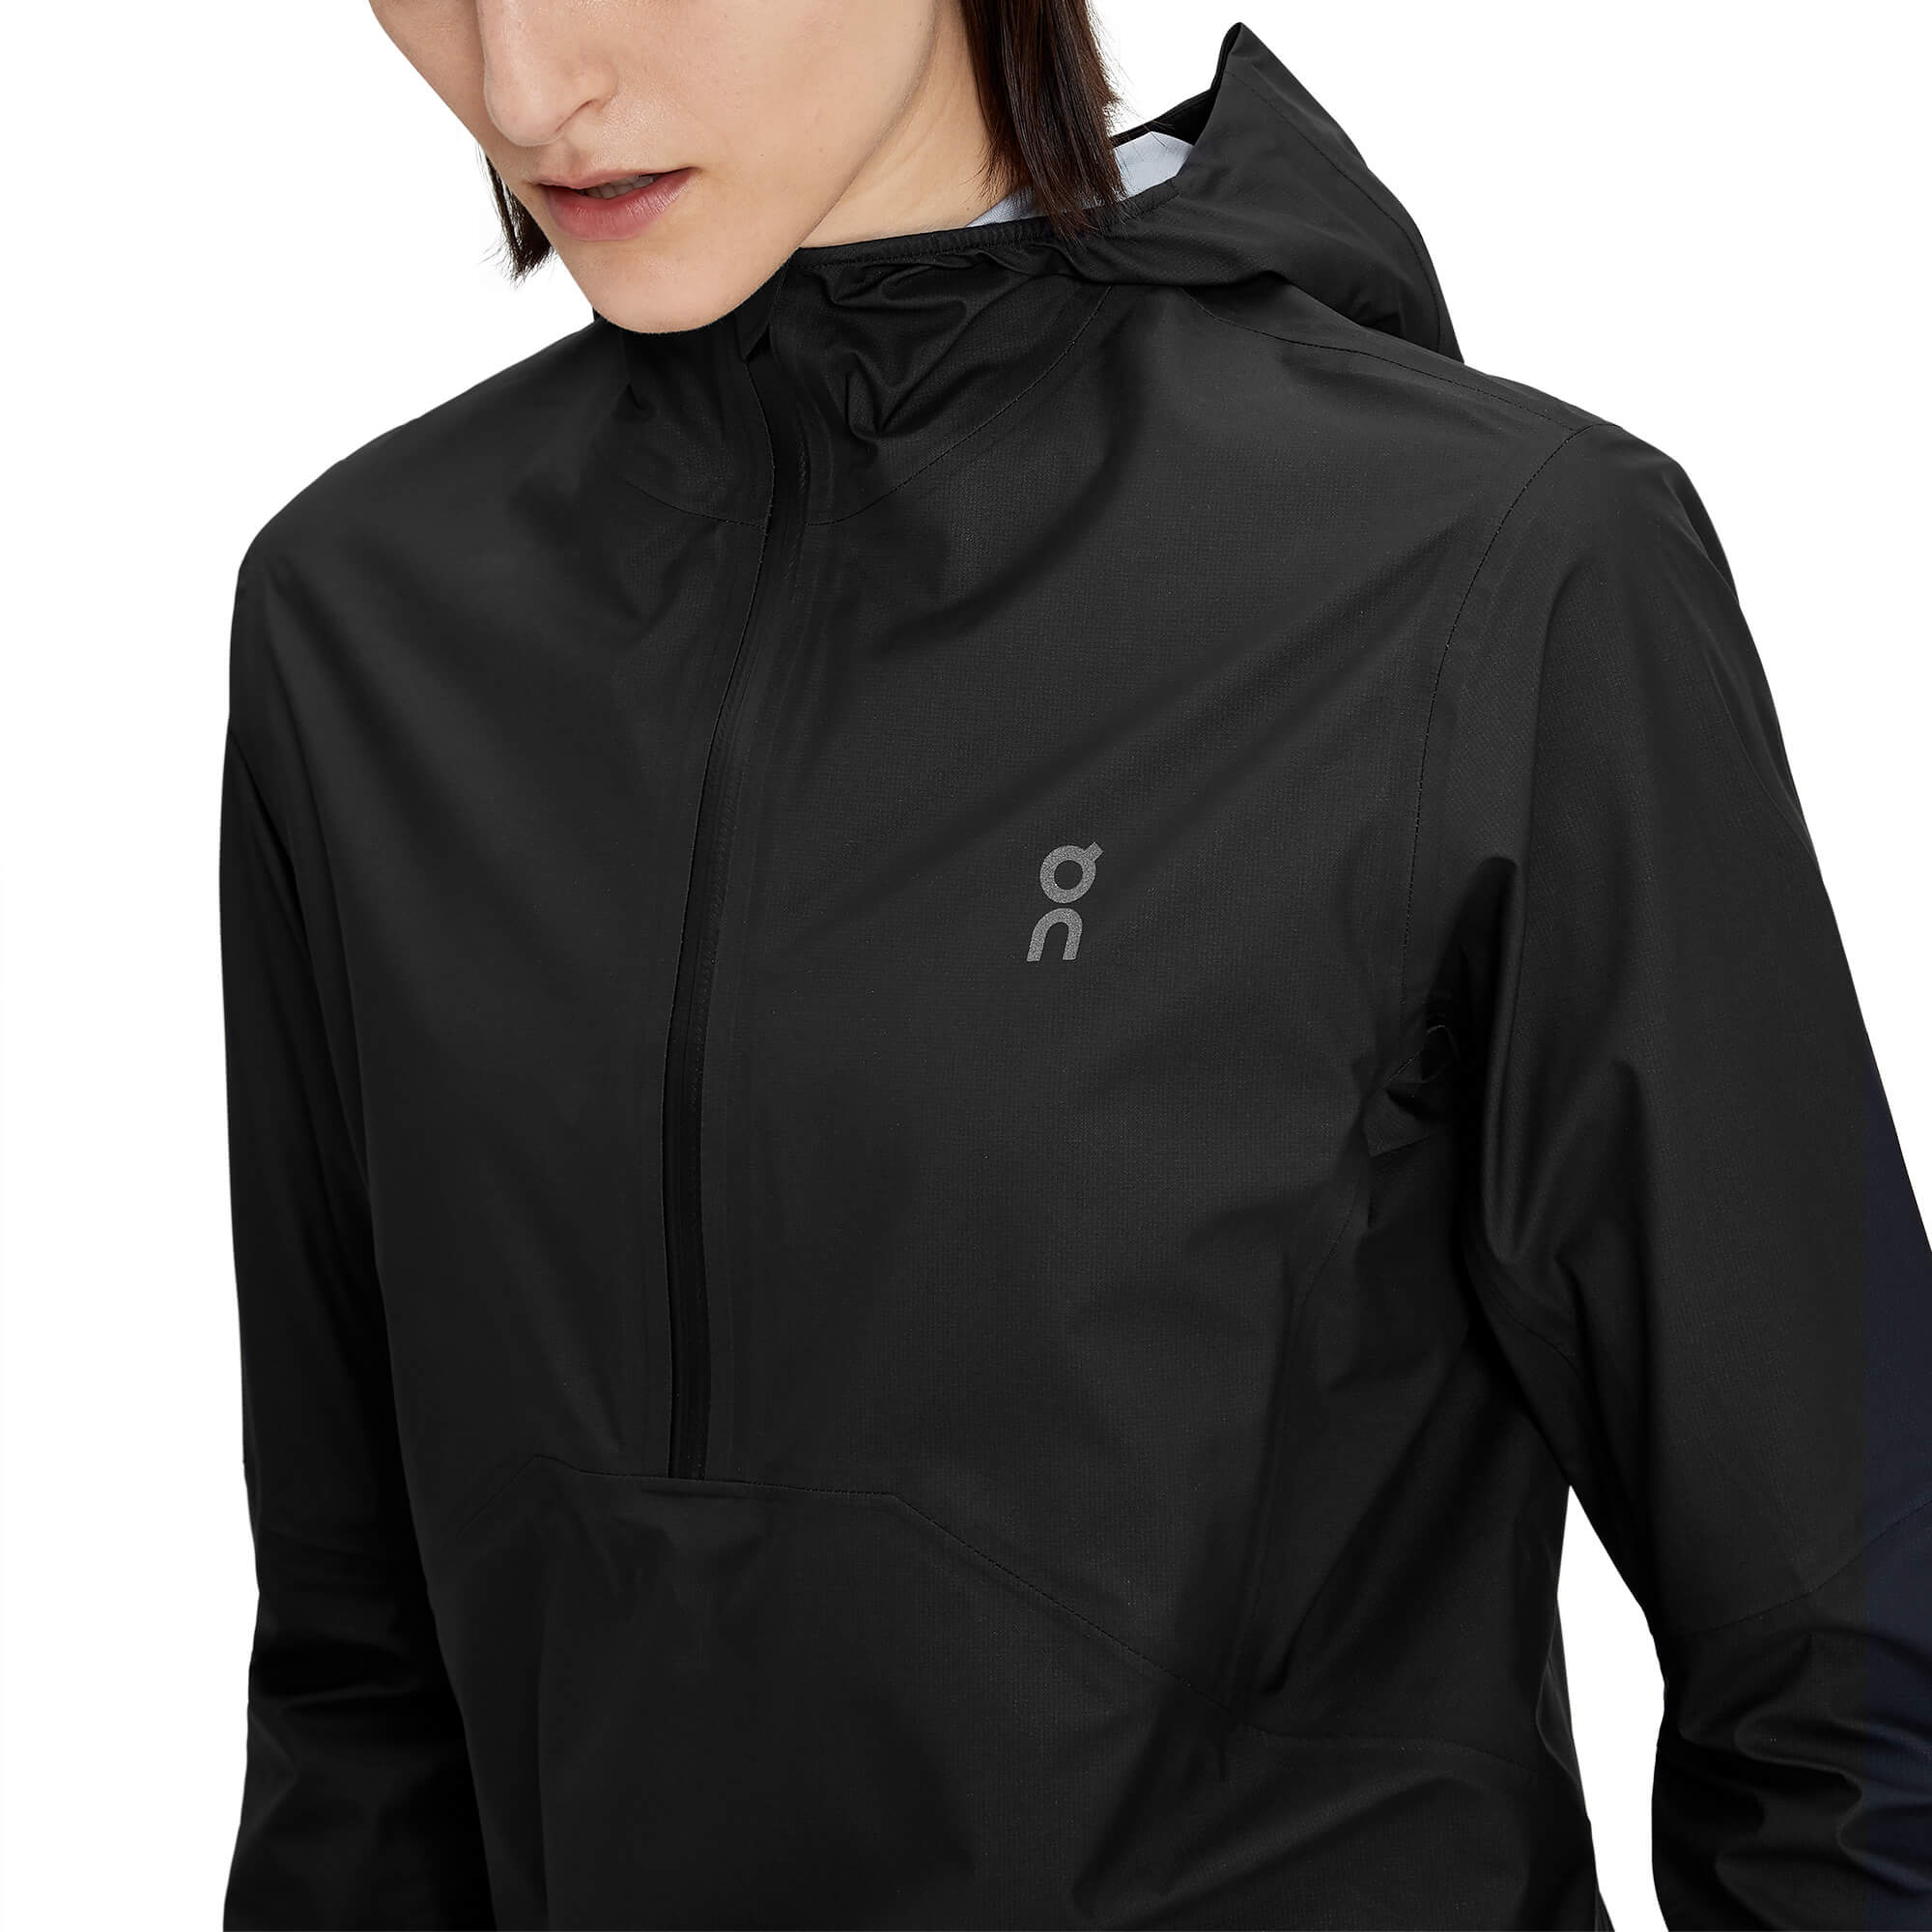 On Waterproof Anorak Women's Technical Sports Jacket